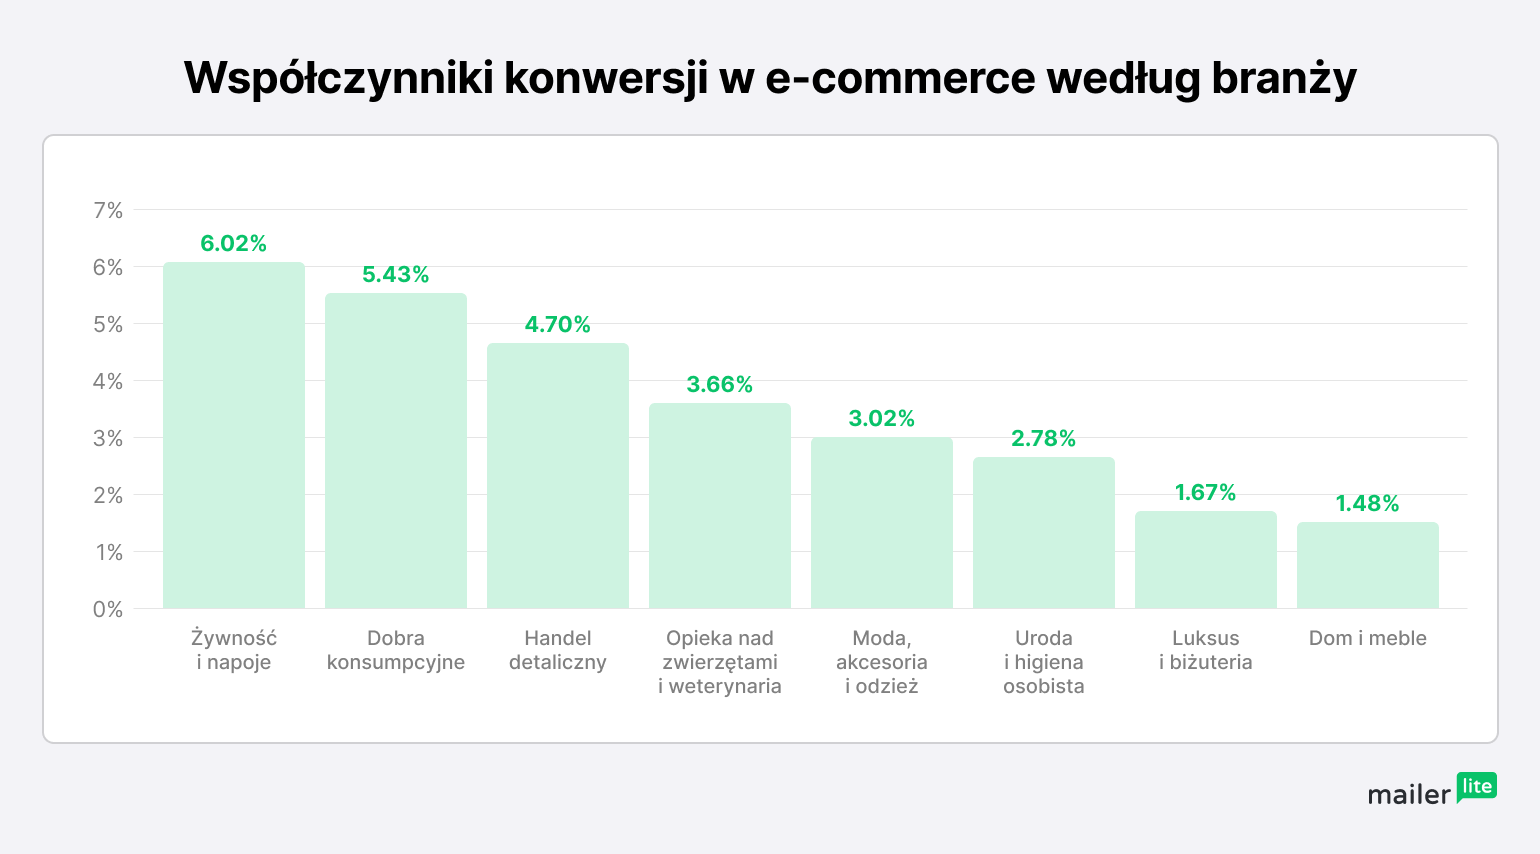 Wykres pokazuje wskaźnik konwersji w e-commerce z podziałem na branże